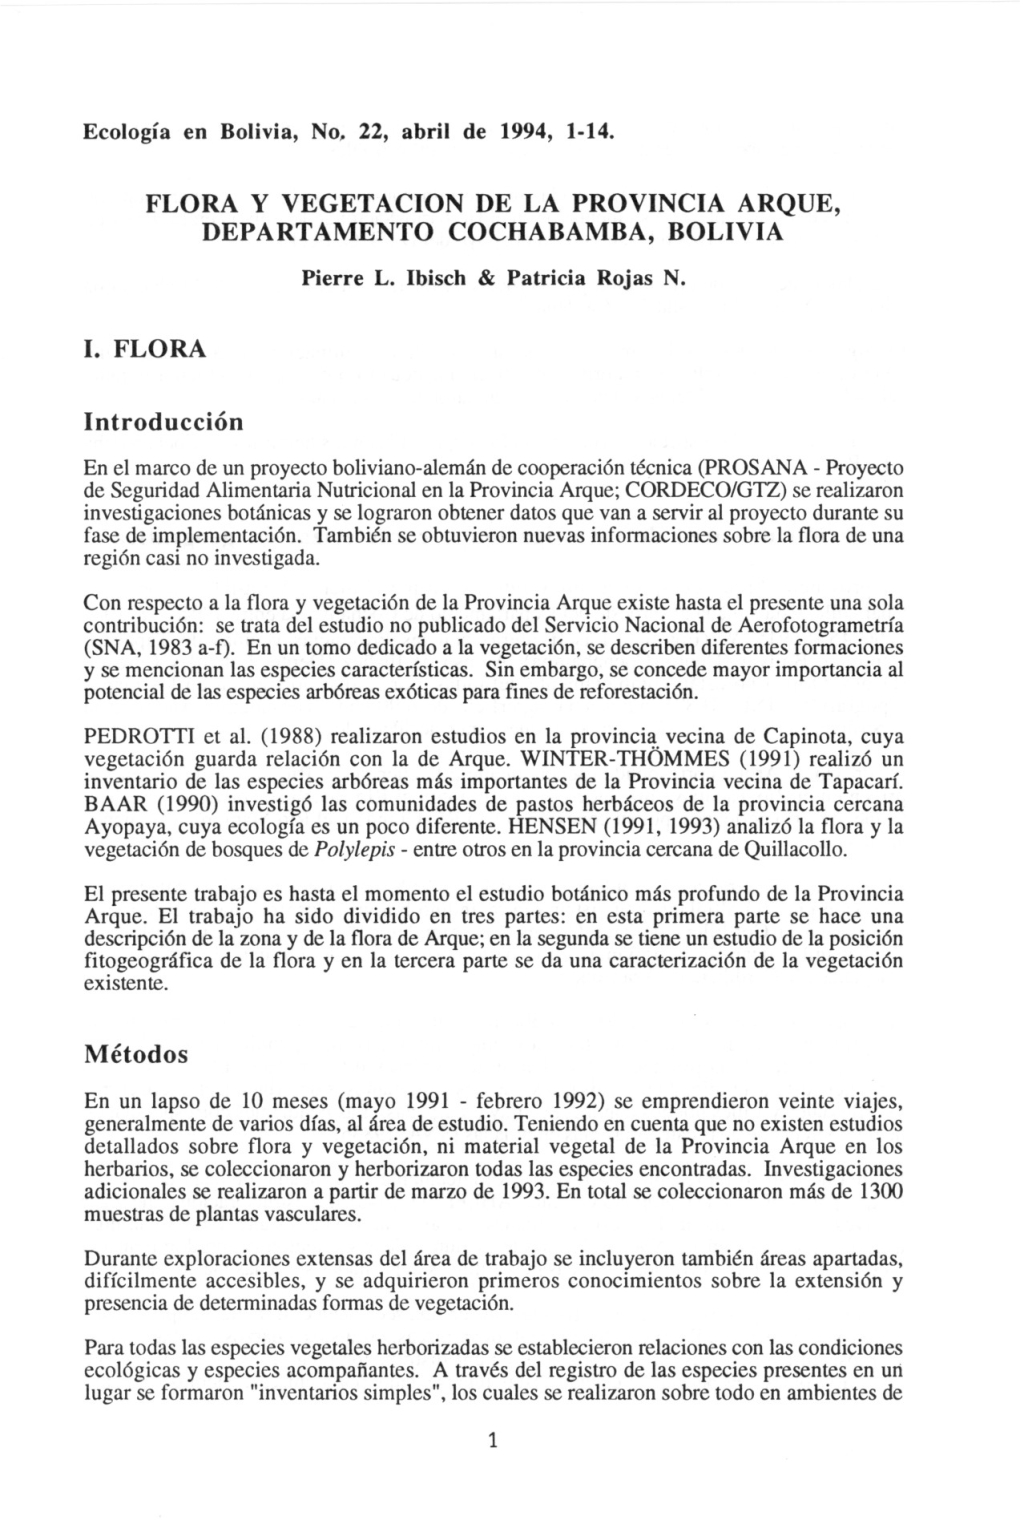 FLORA Y VEGETACION DE LA PROVINCIA ARQUE, DEPARTAMENTO COCHABAMBA, BOLIVIA Pierre L